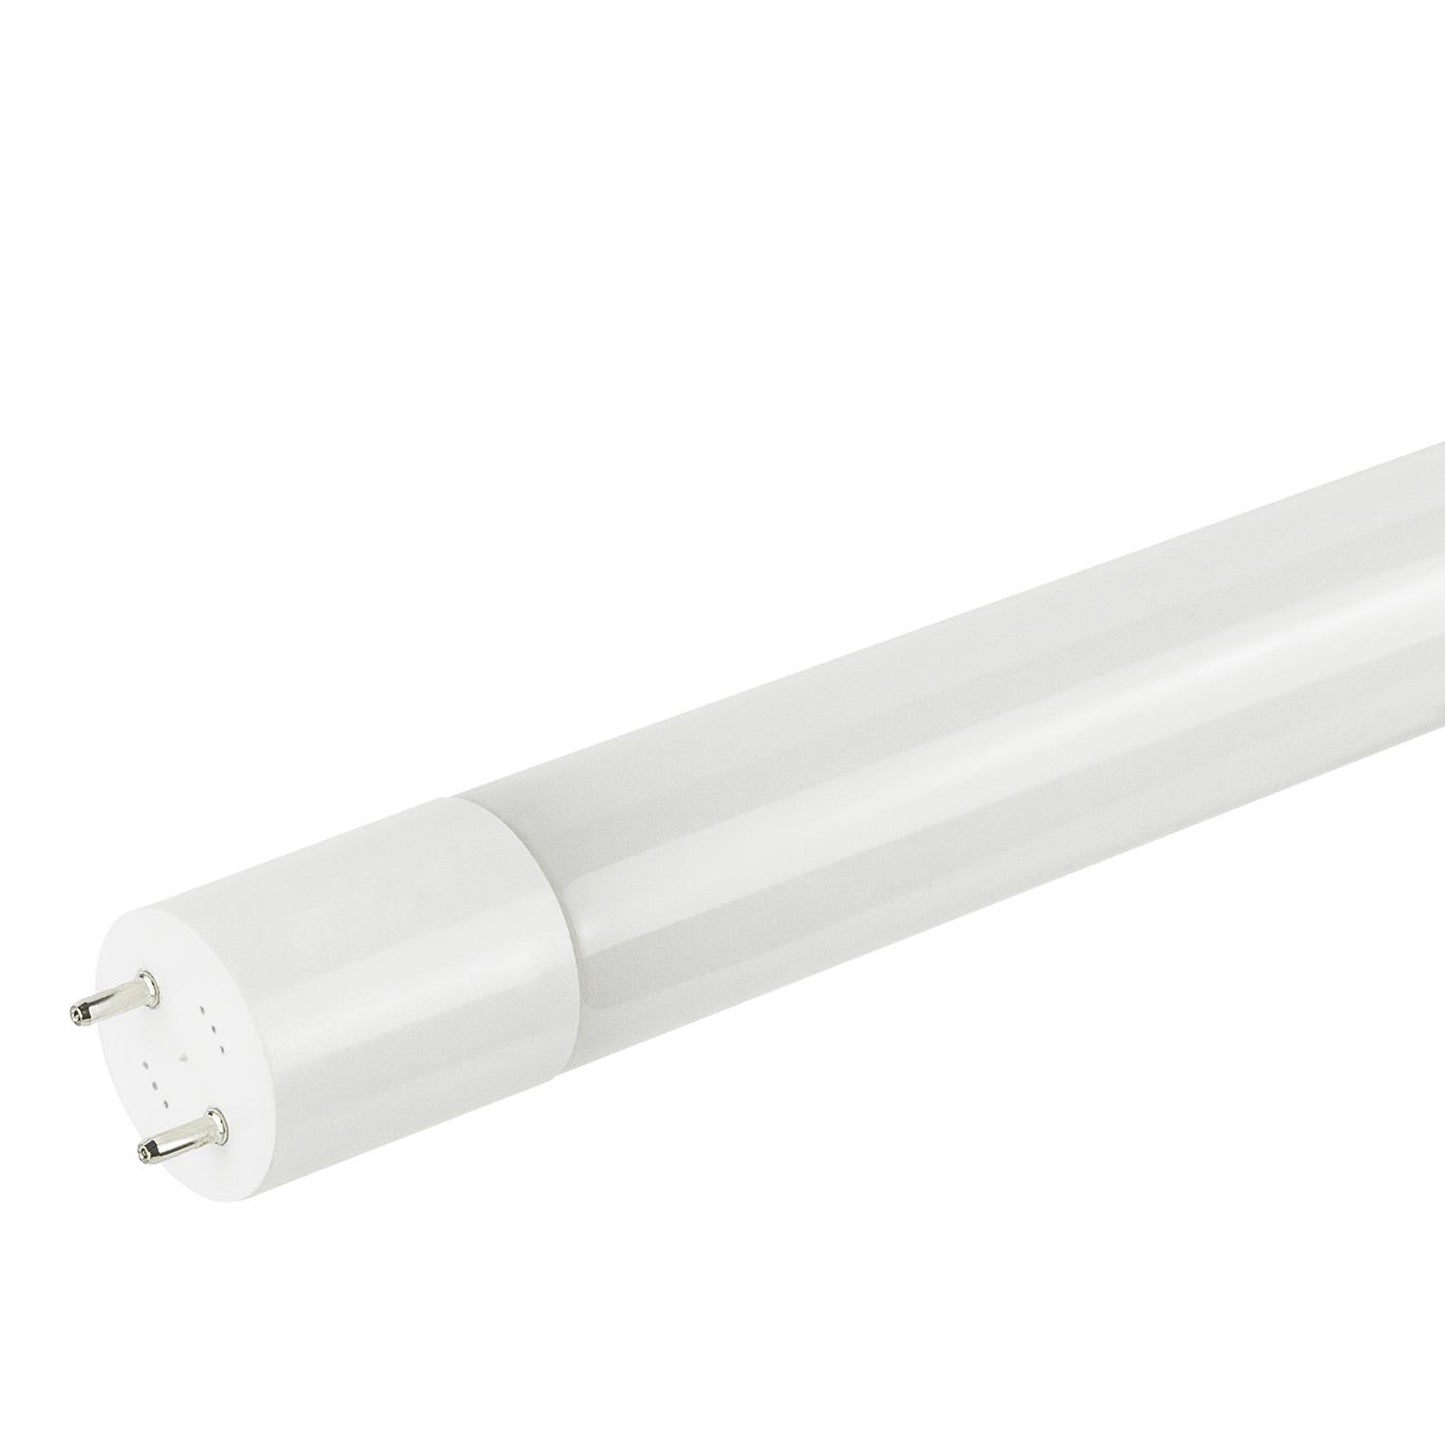 Sunlite T8/LED/IS/4'/15W/35K/PPS 15 Watt T8 Lamp Medium Bi-Pin (G13) Base Neutral White